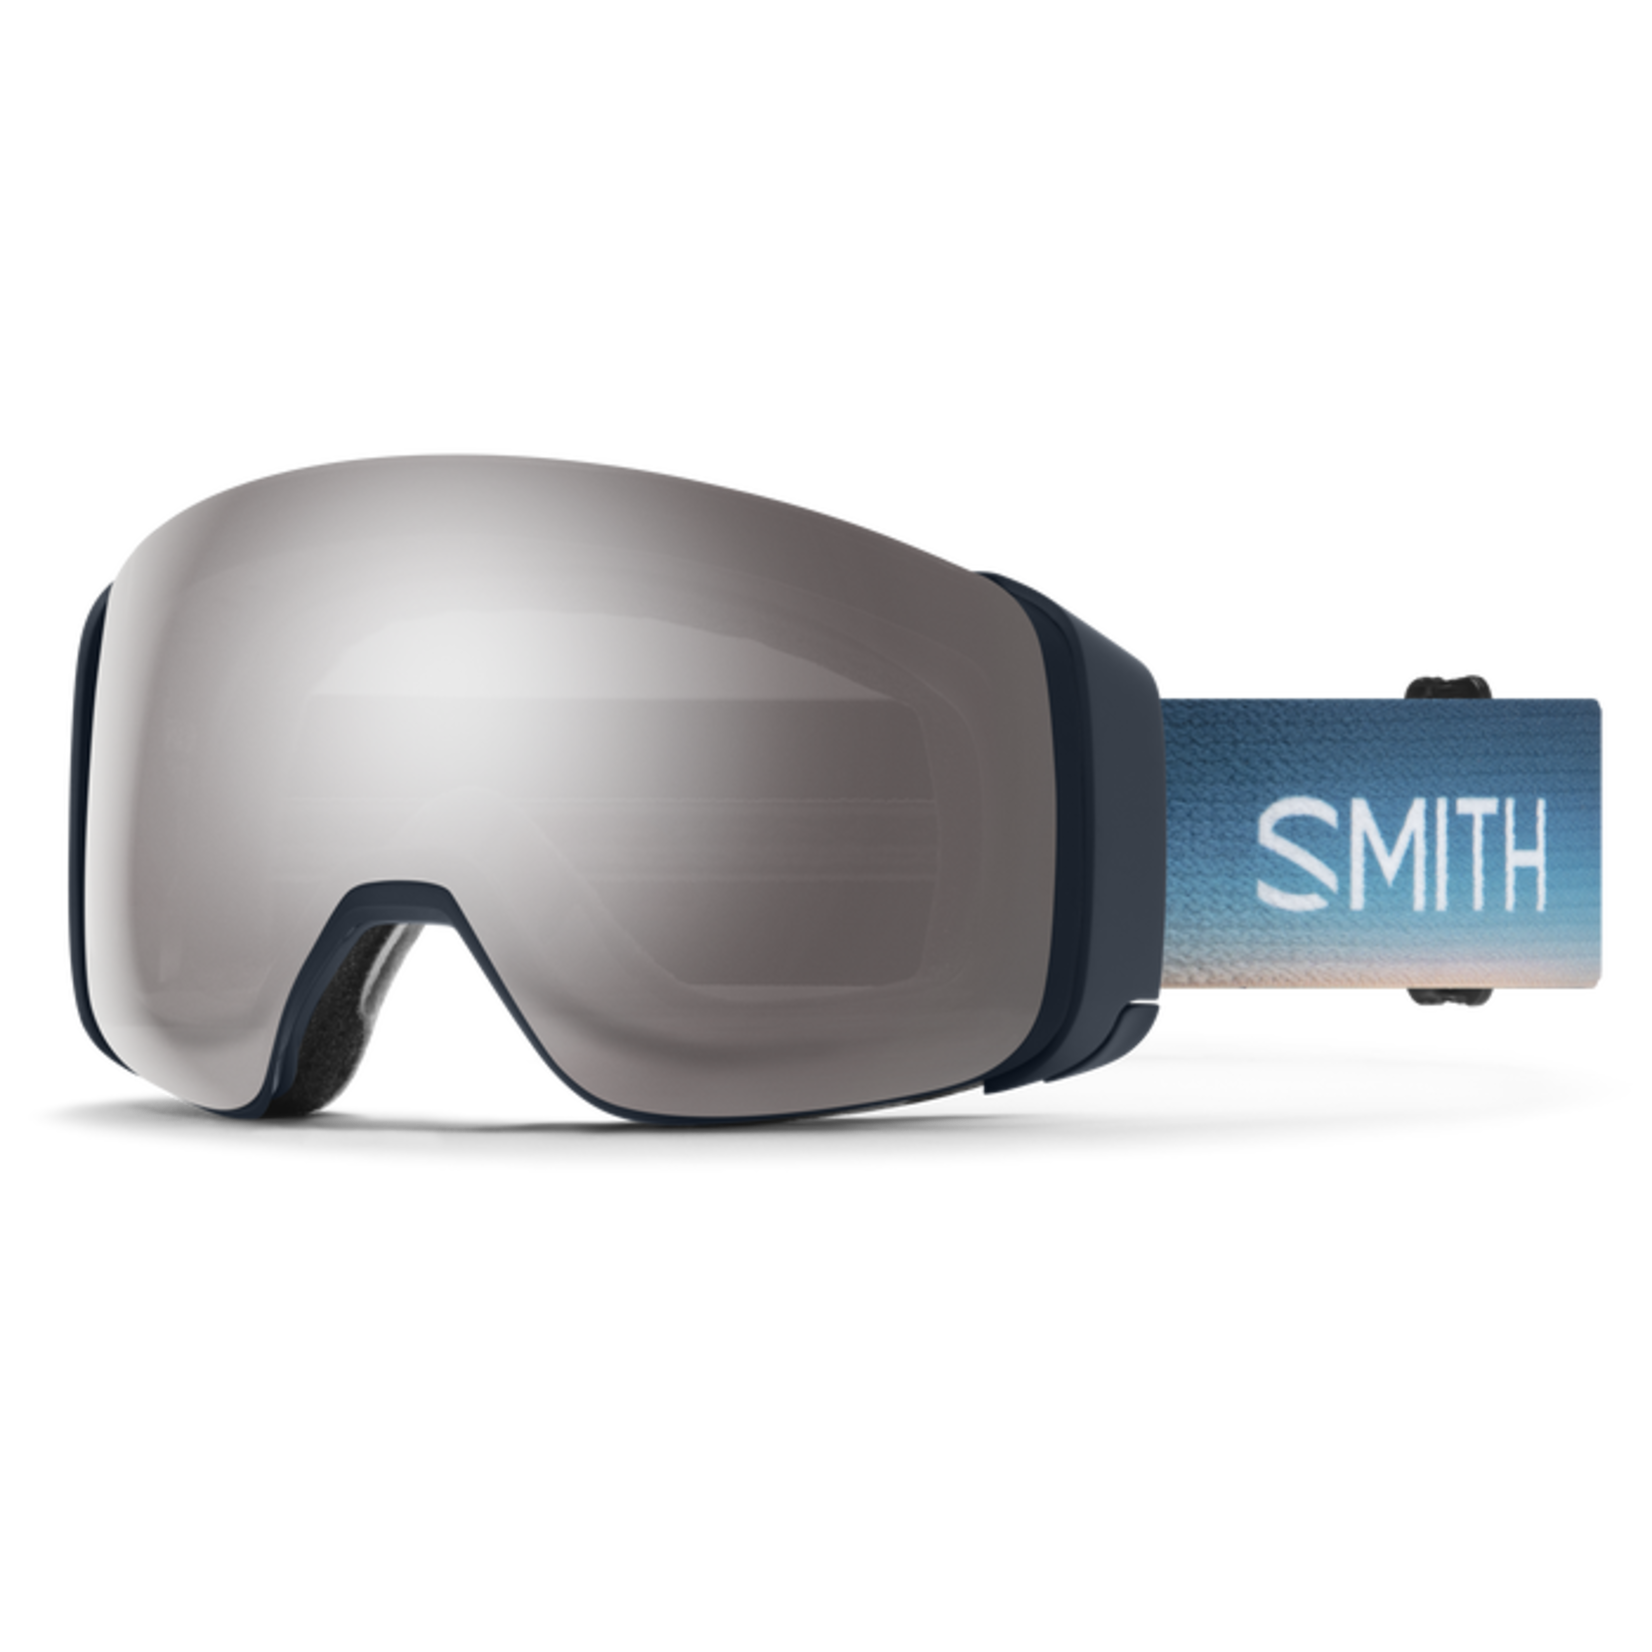 SMITH SMITH 4D MAG